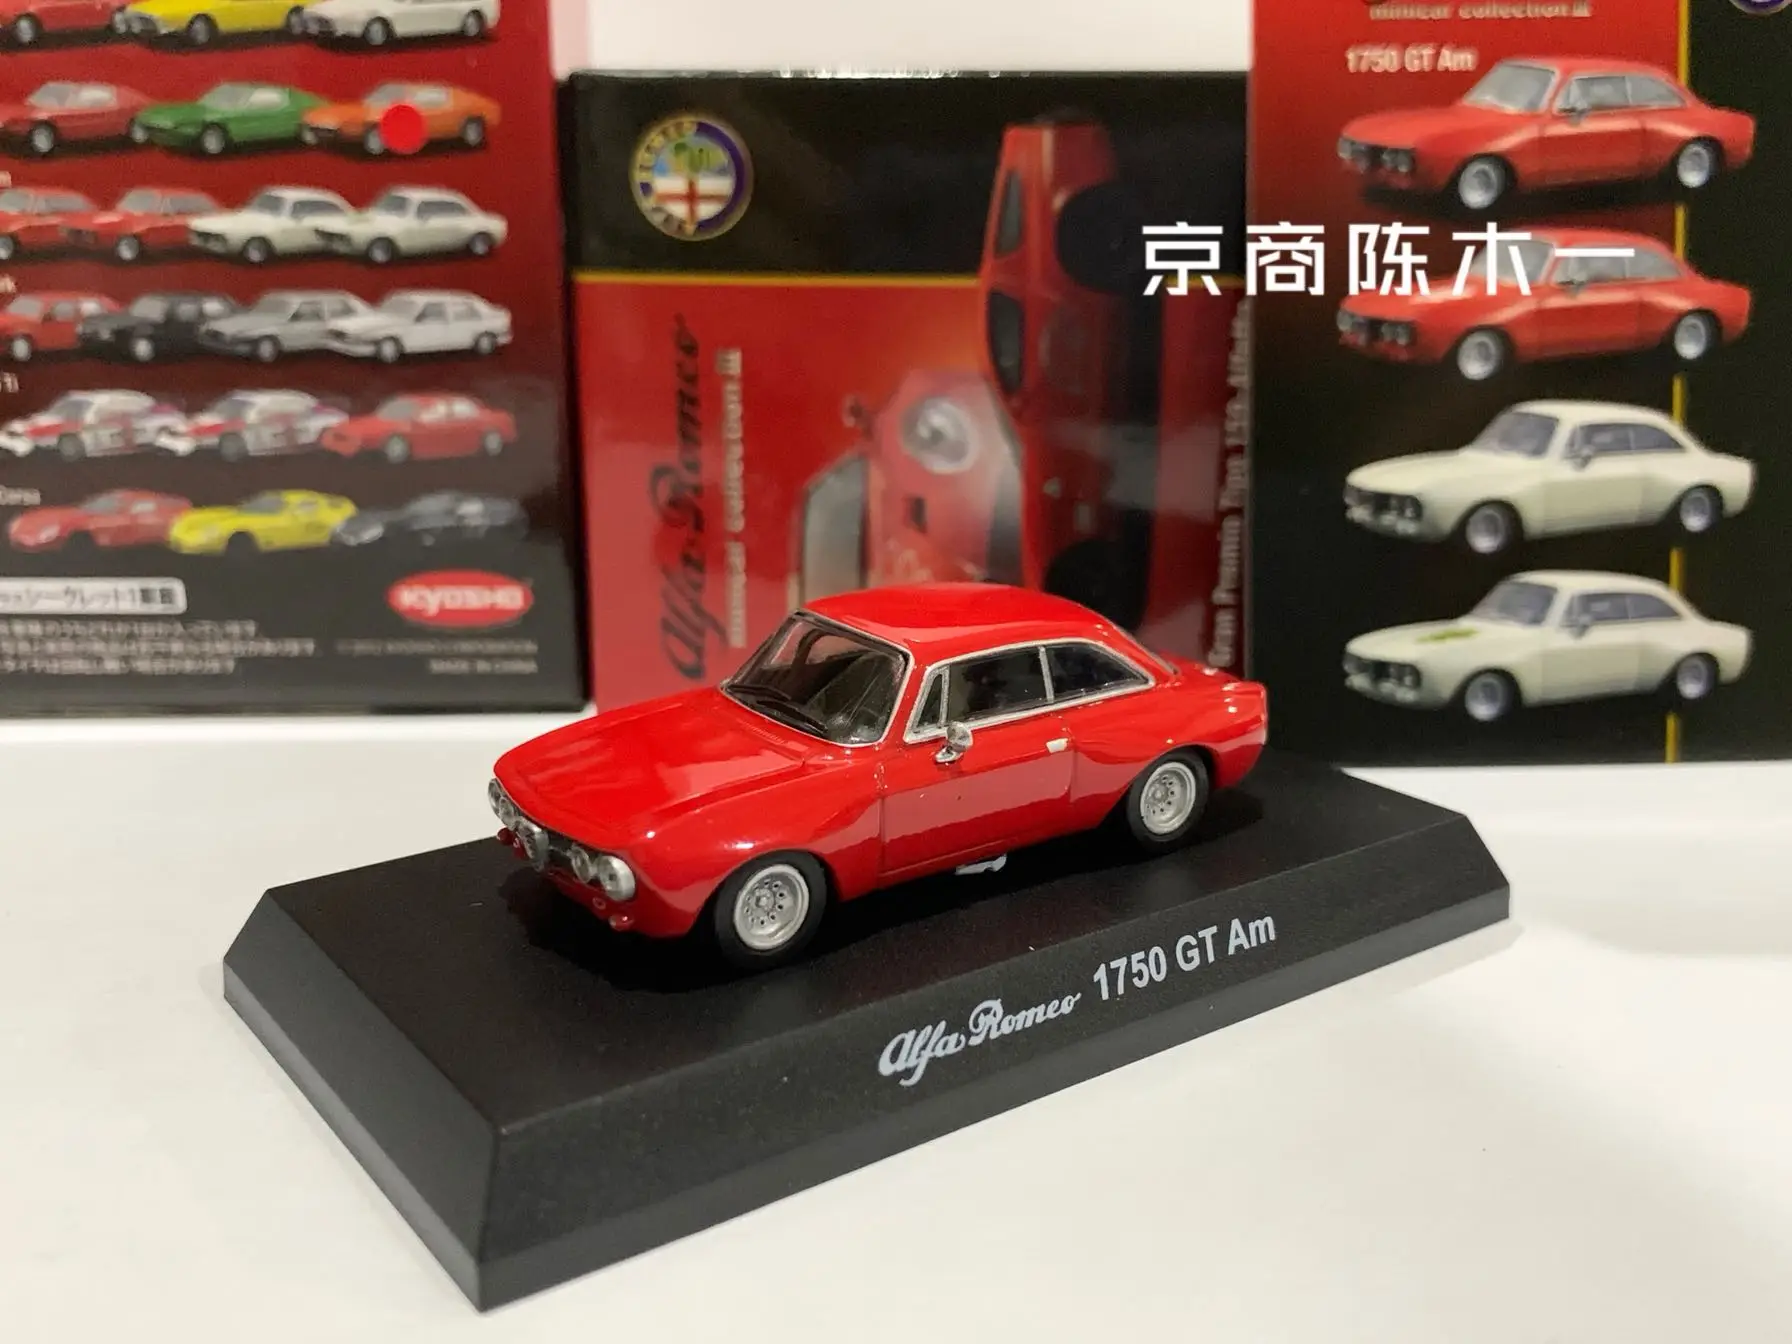 kyosho-collection-de-jouets-modeles-de-voiture-en-alliage-moule-sous-pression-romeo-adieu-1-64-ightam-lm-f1-racing-1750